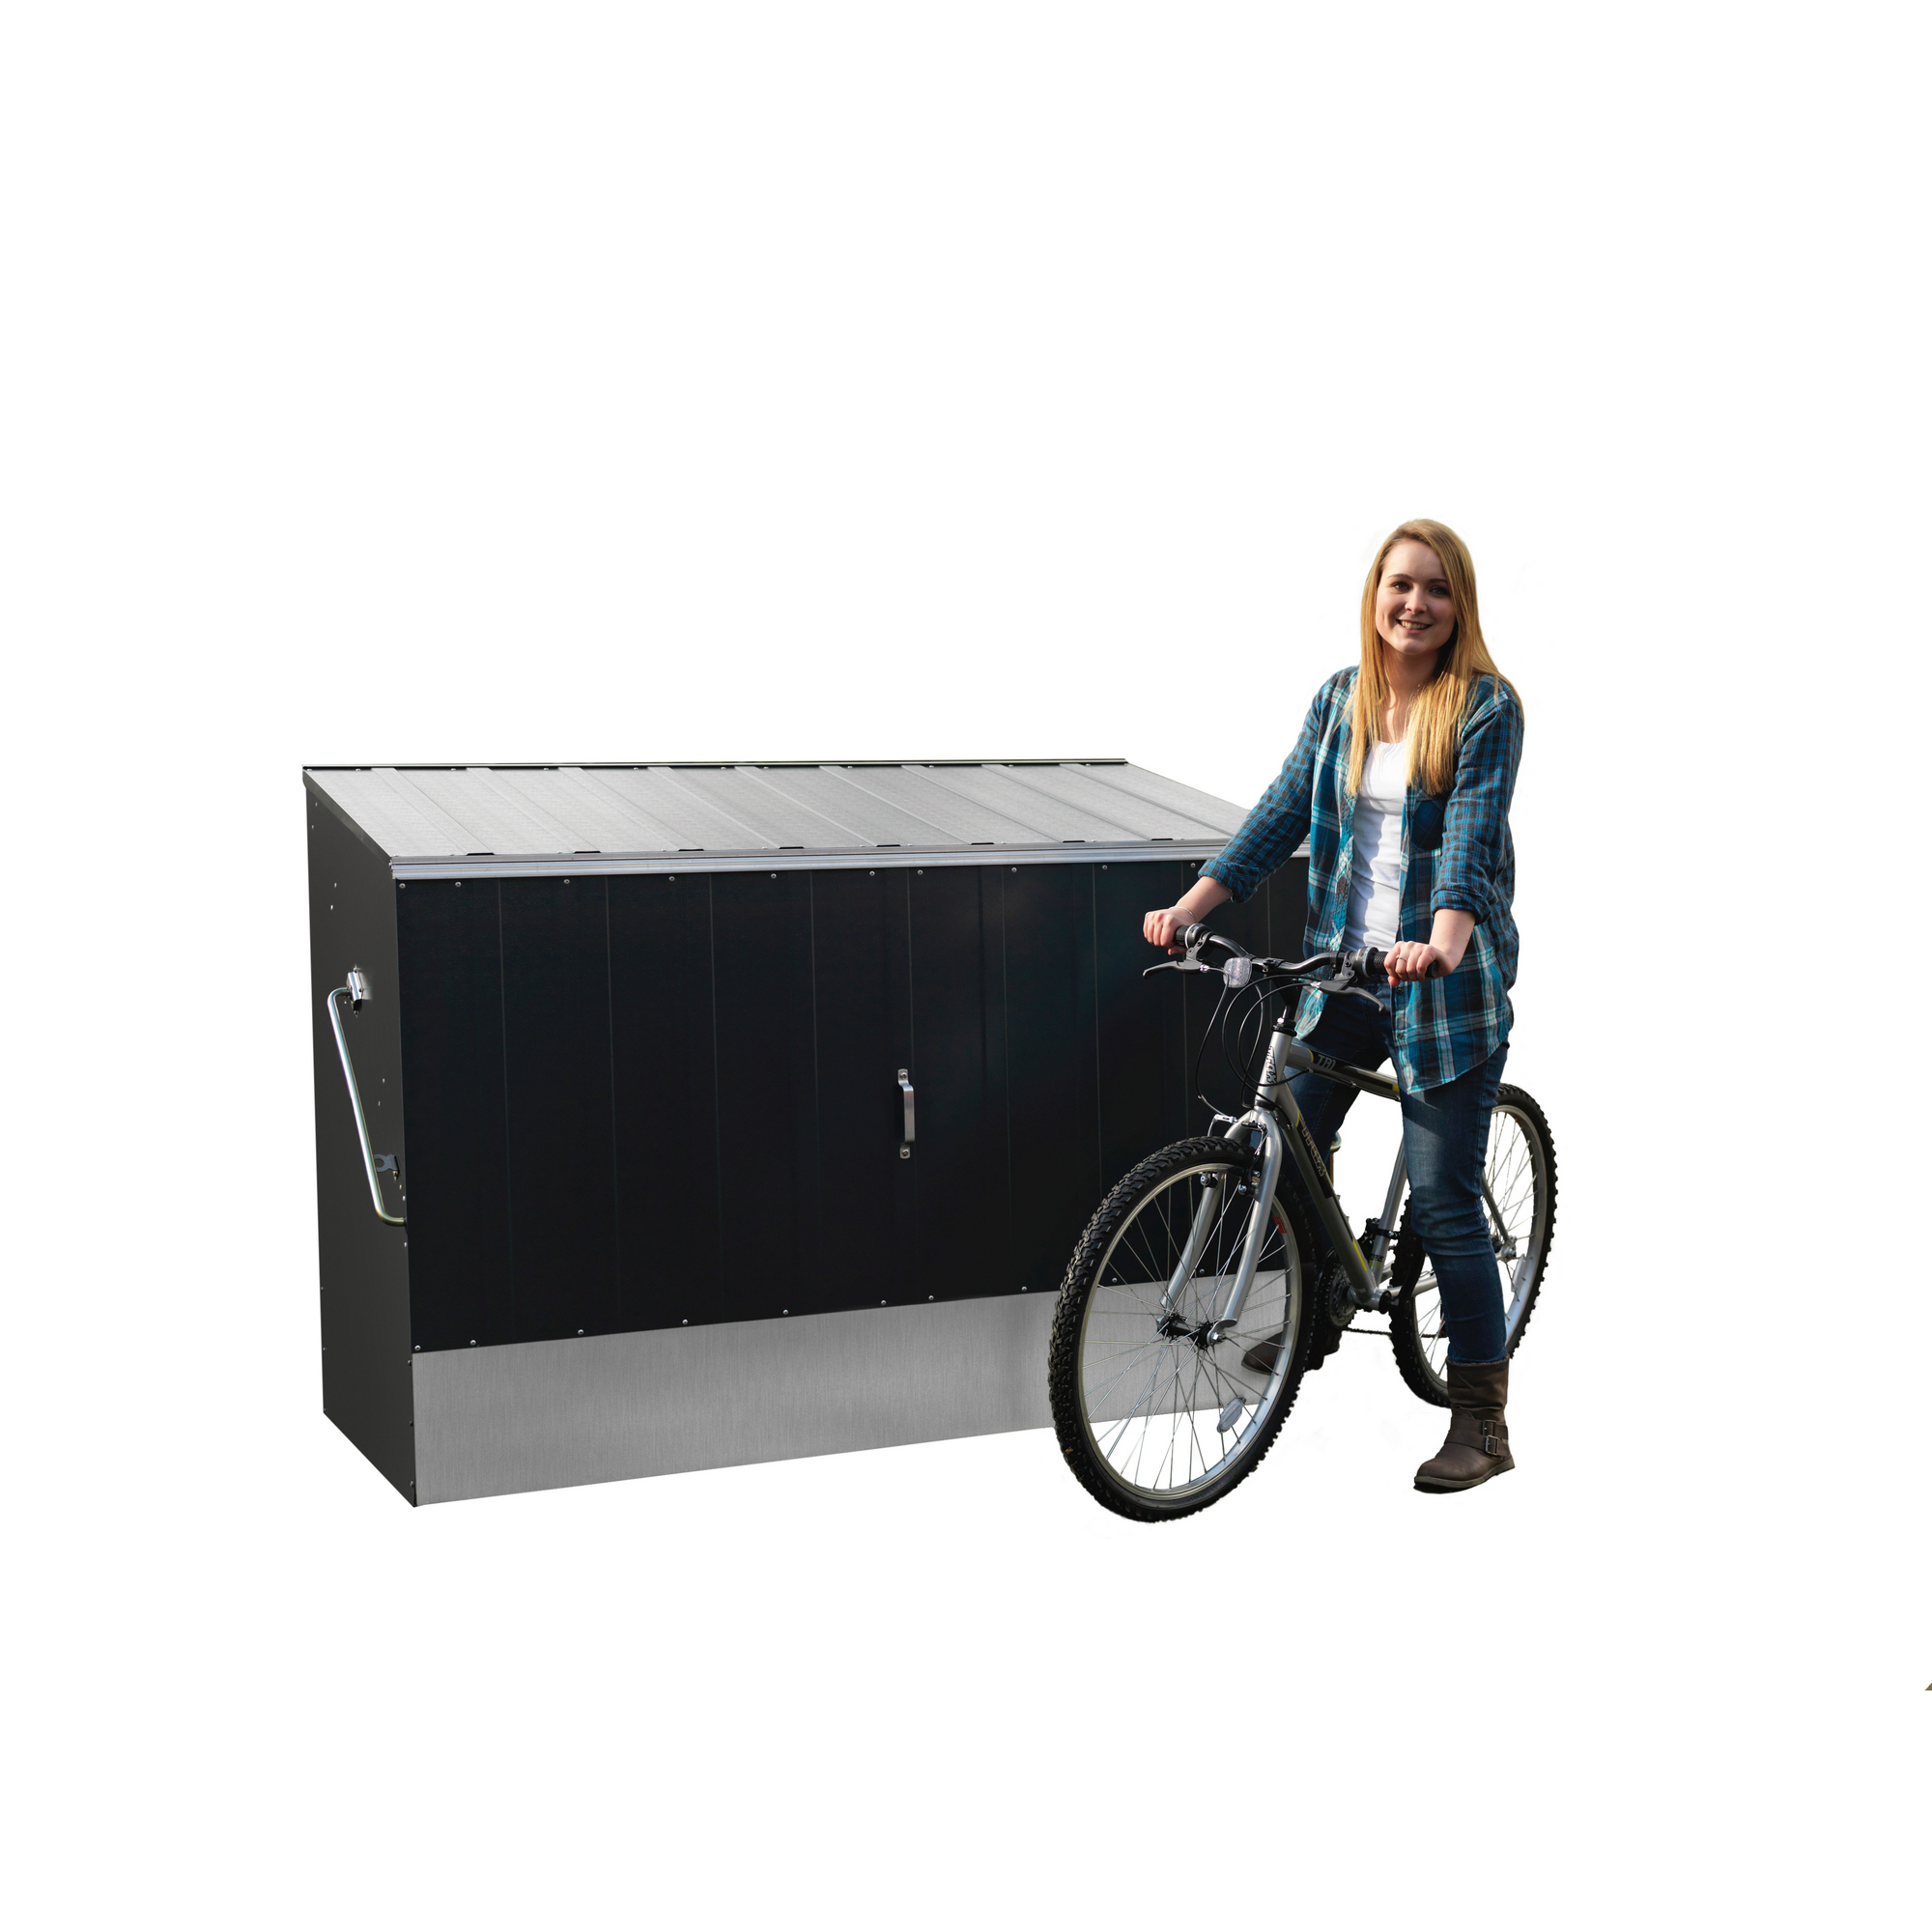 Fahrradbox mit Einfahrtsrampe Metall anthrazit 196 x 133 x 89 cm + product picture